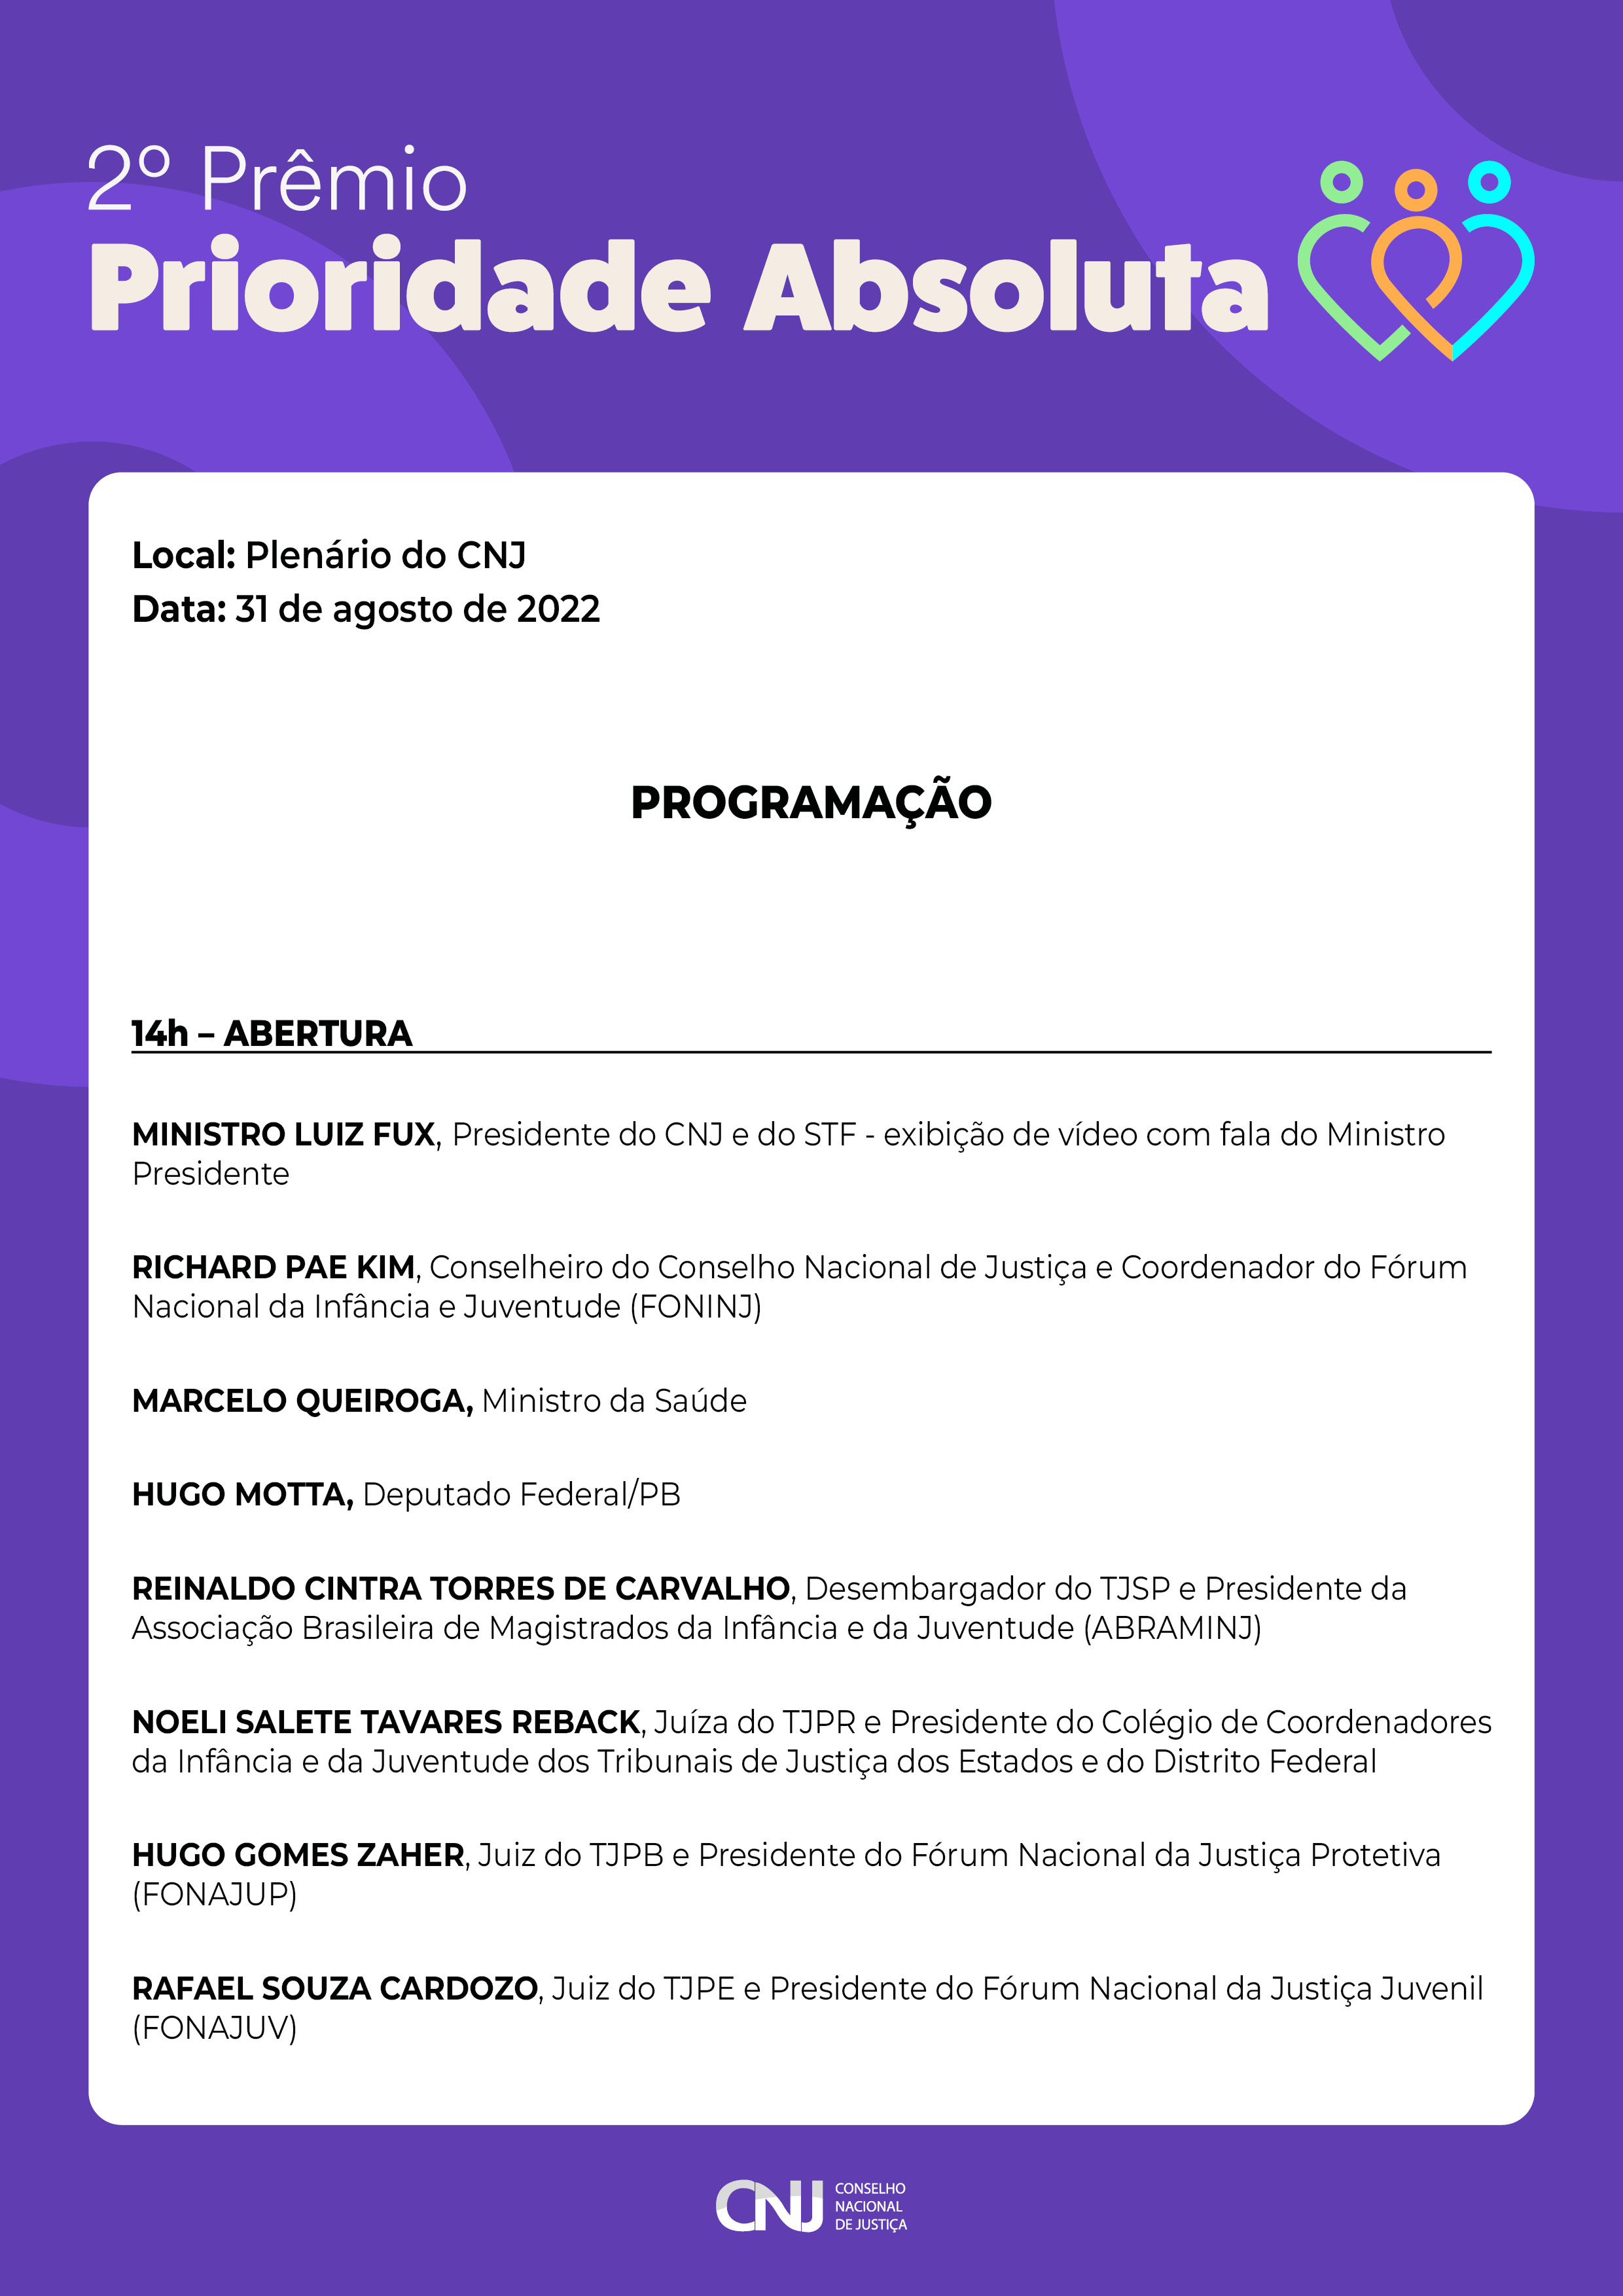 programação do 2º Prêmio Prioridade Absoluta 2022 em formato jpeg - página 1